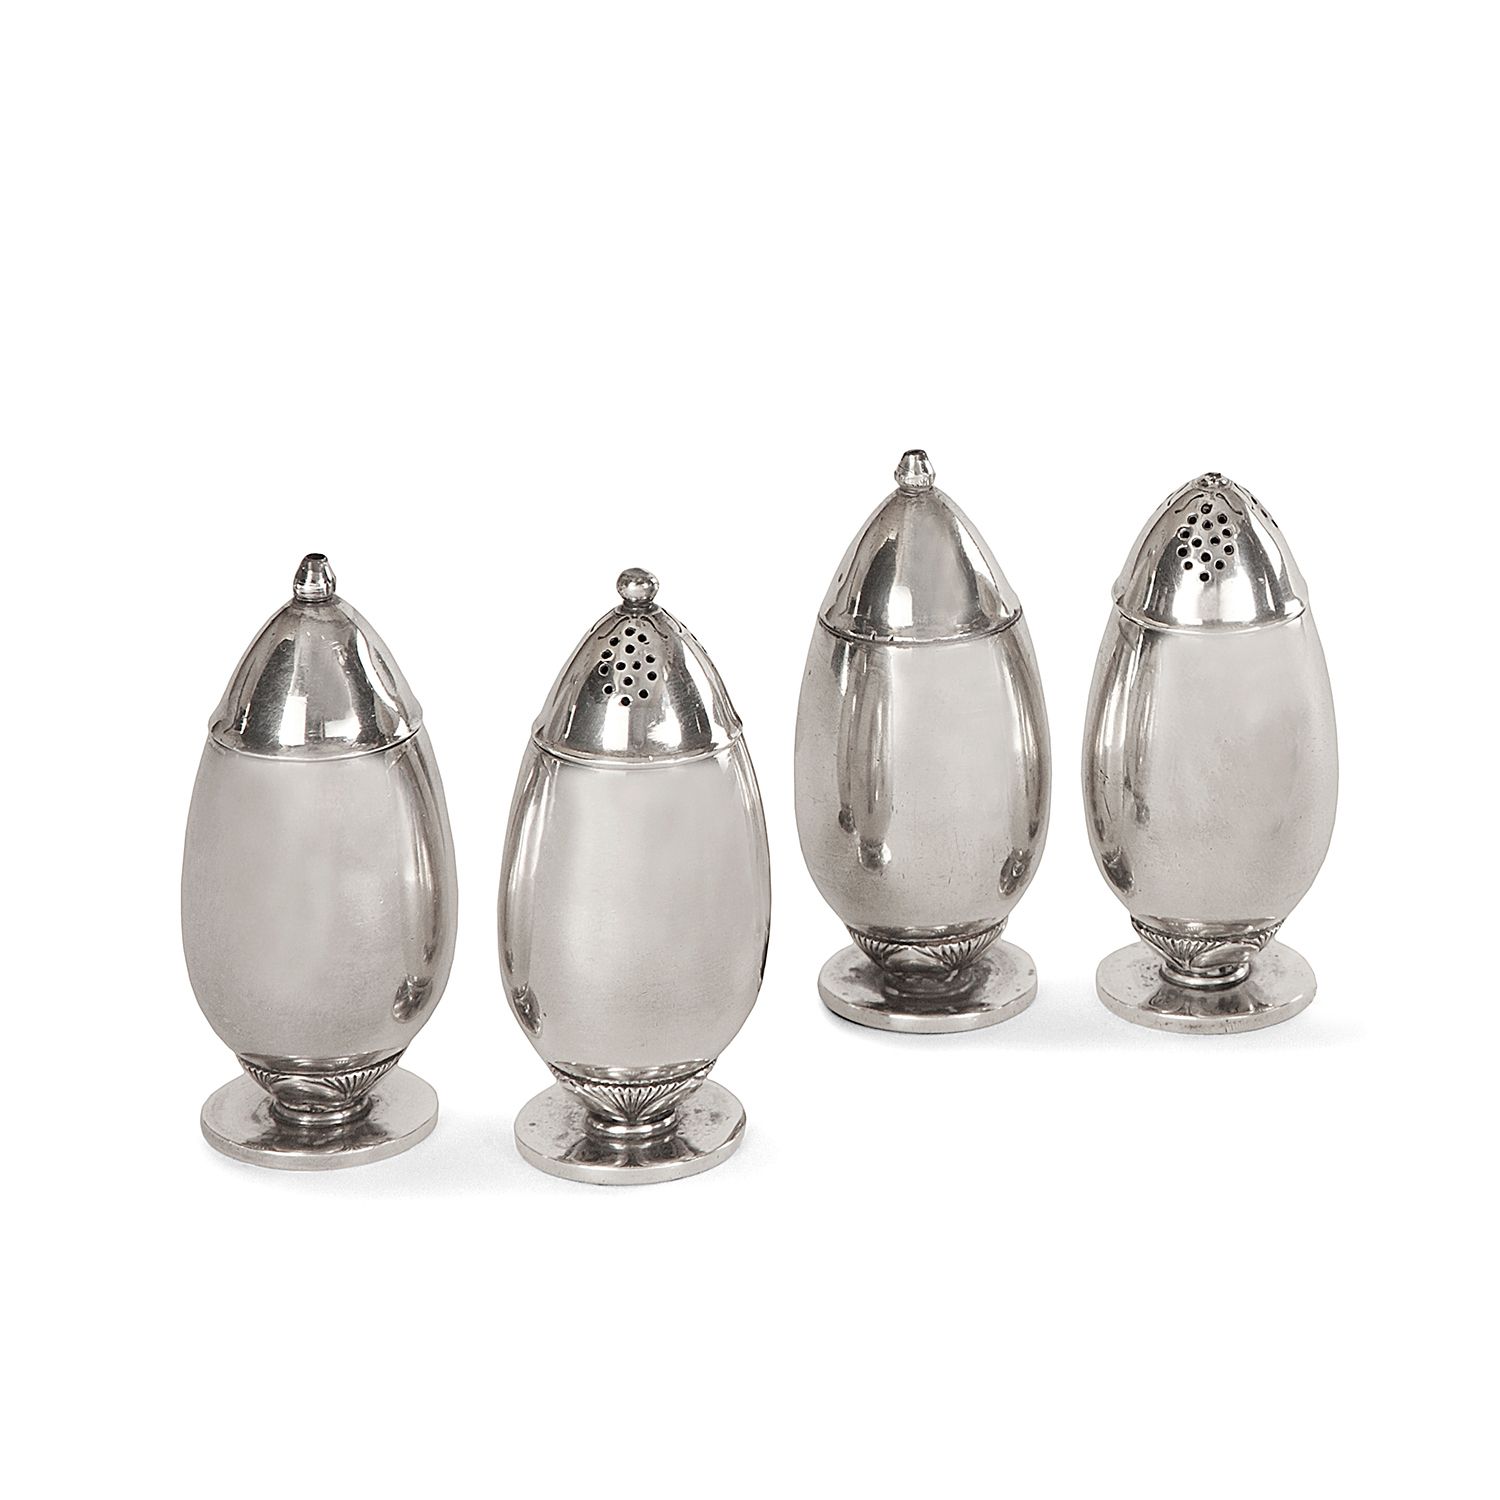 Null 乔治-延森(1866-1935)和贡多芬-阿尔伯特(1887-1970)

一套两个银制的盐和胡椒罐，卵形的主体，底部有棕榈花纹装饰，圆形的底座，大约&hellip;